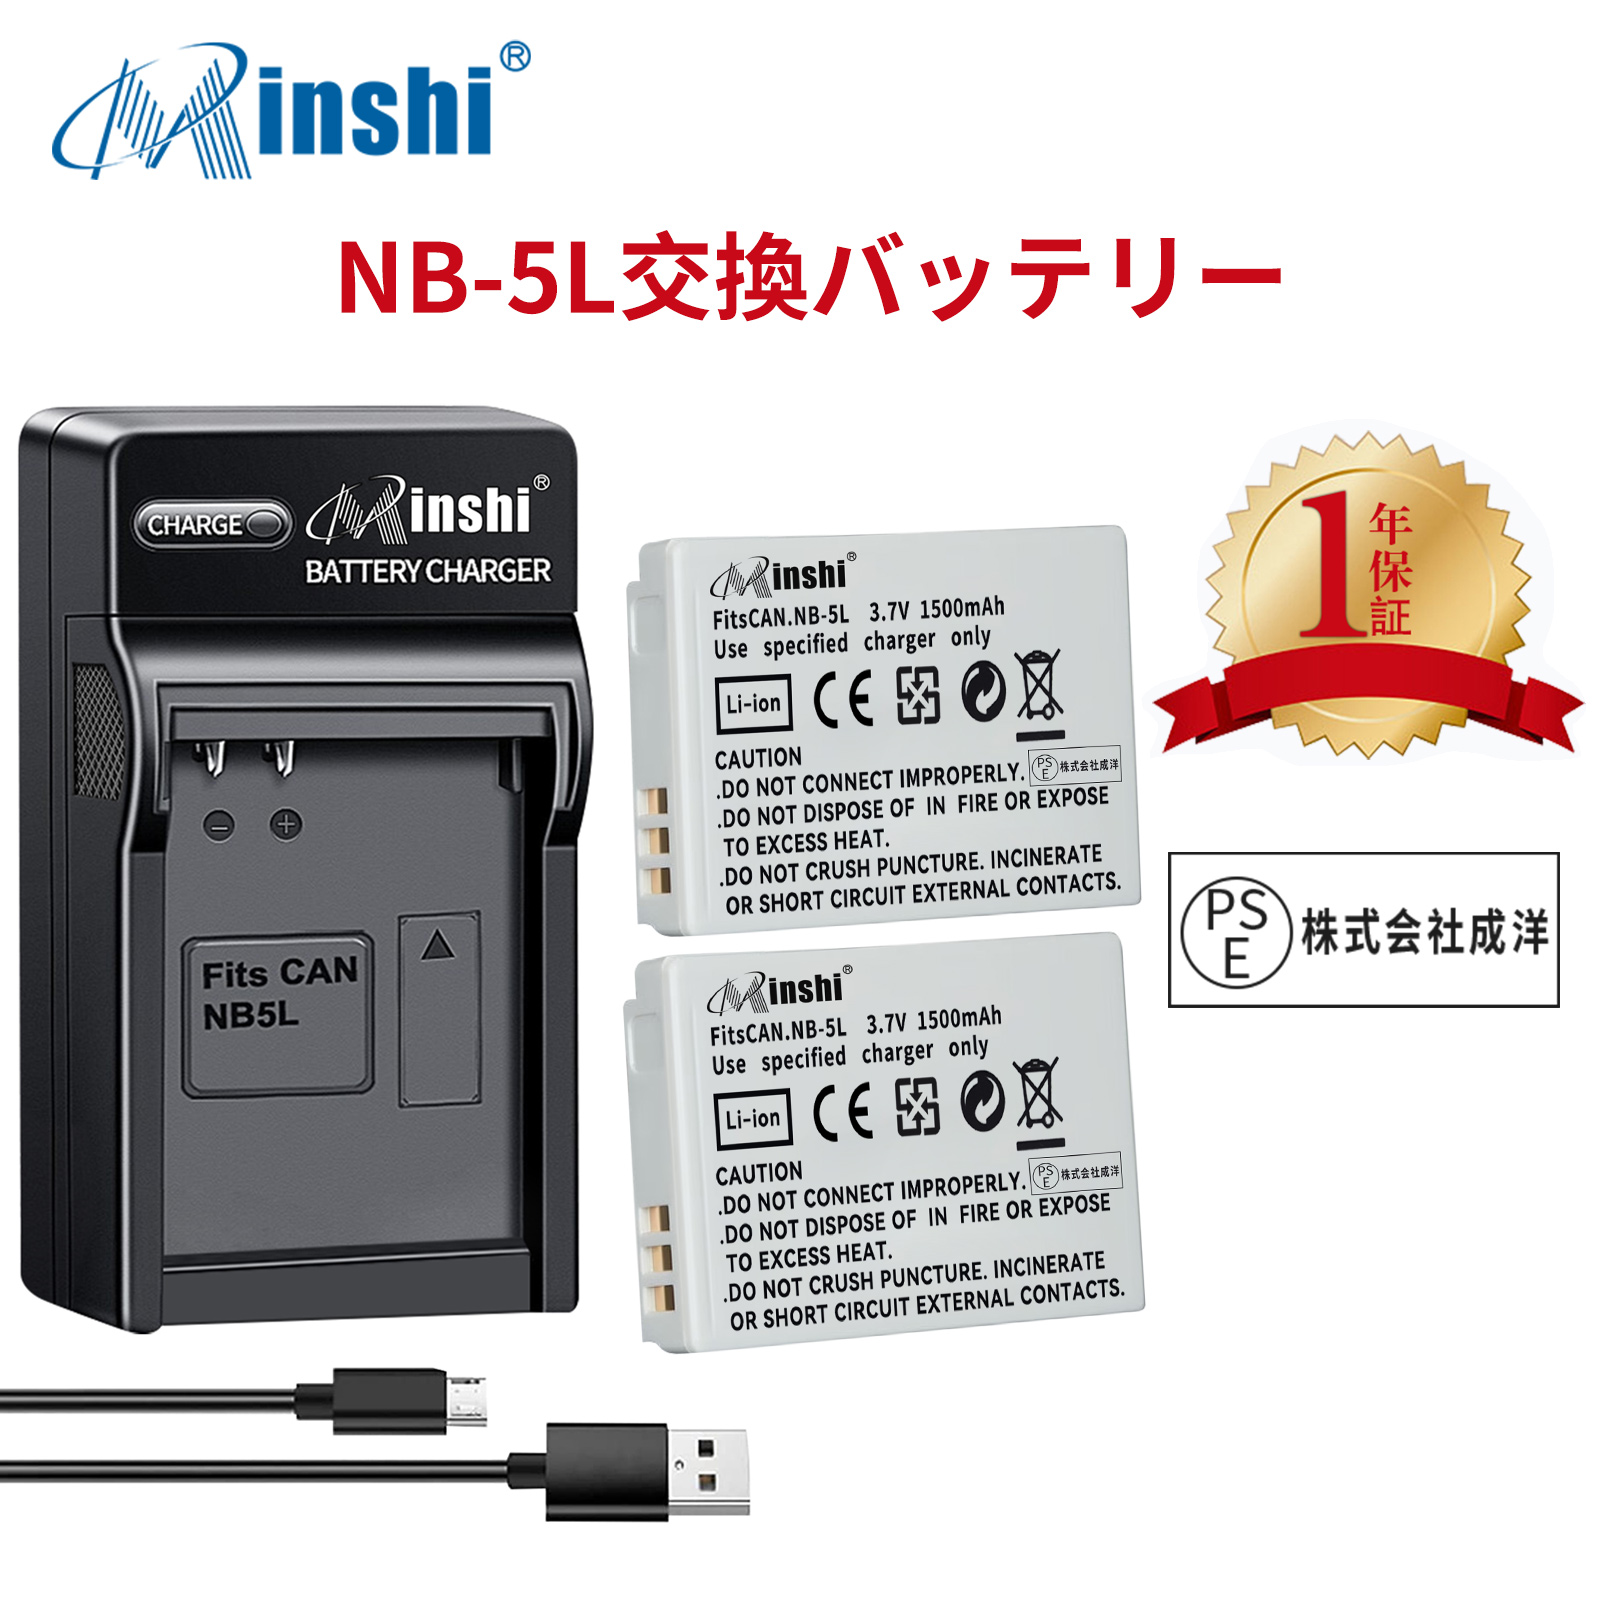 【２個セット】minshi CANON S100 NB-5L【1500mAh 3.7V】【互換急速USBチャージャー】PSE認定済 高品質交換用バッテリー